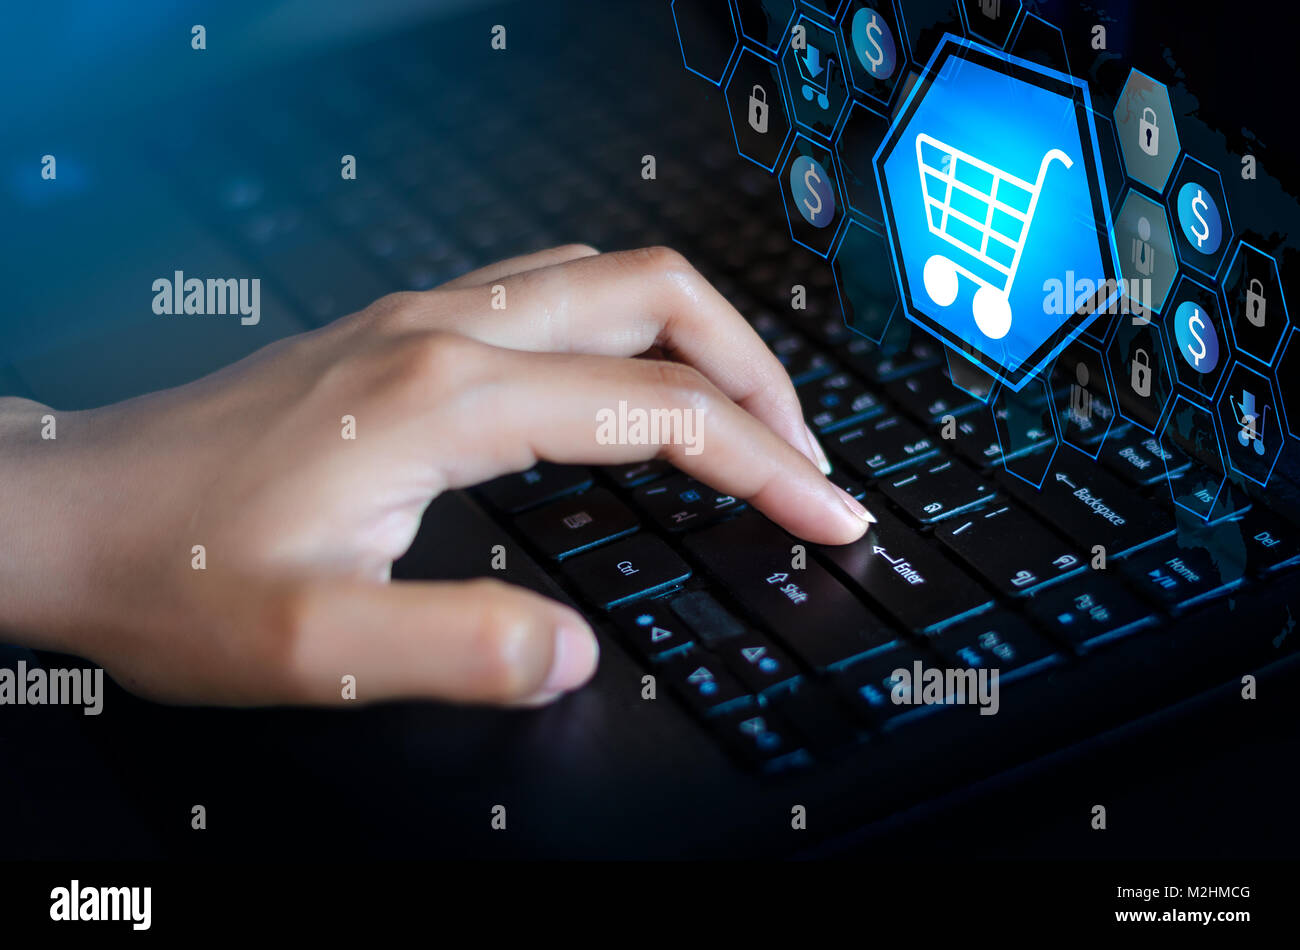 Drücken Sie die Eingabetaste, um den Computer. Key Lock Security System  abstract Technology World Digital Shopping um Transaktionen im Internet  Stockfotografie - Alamy